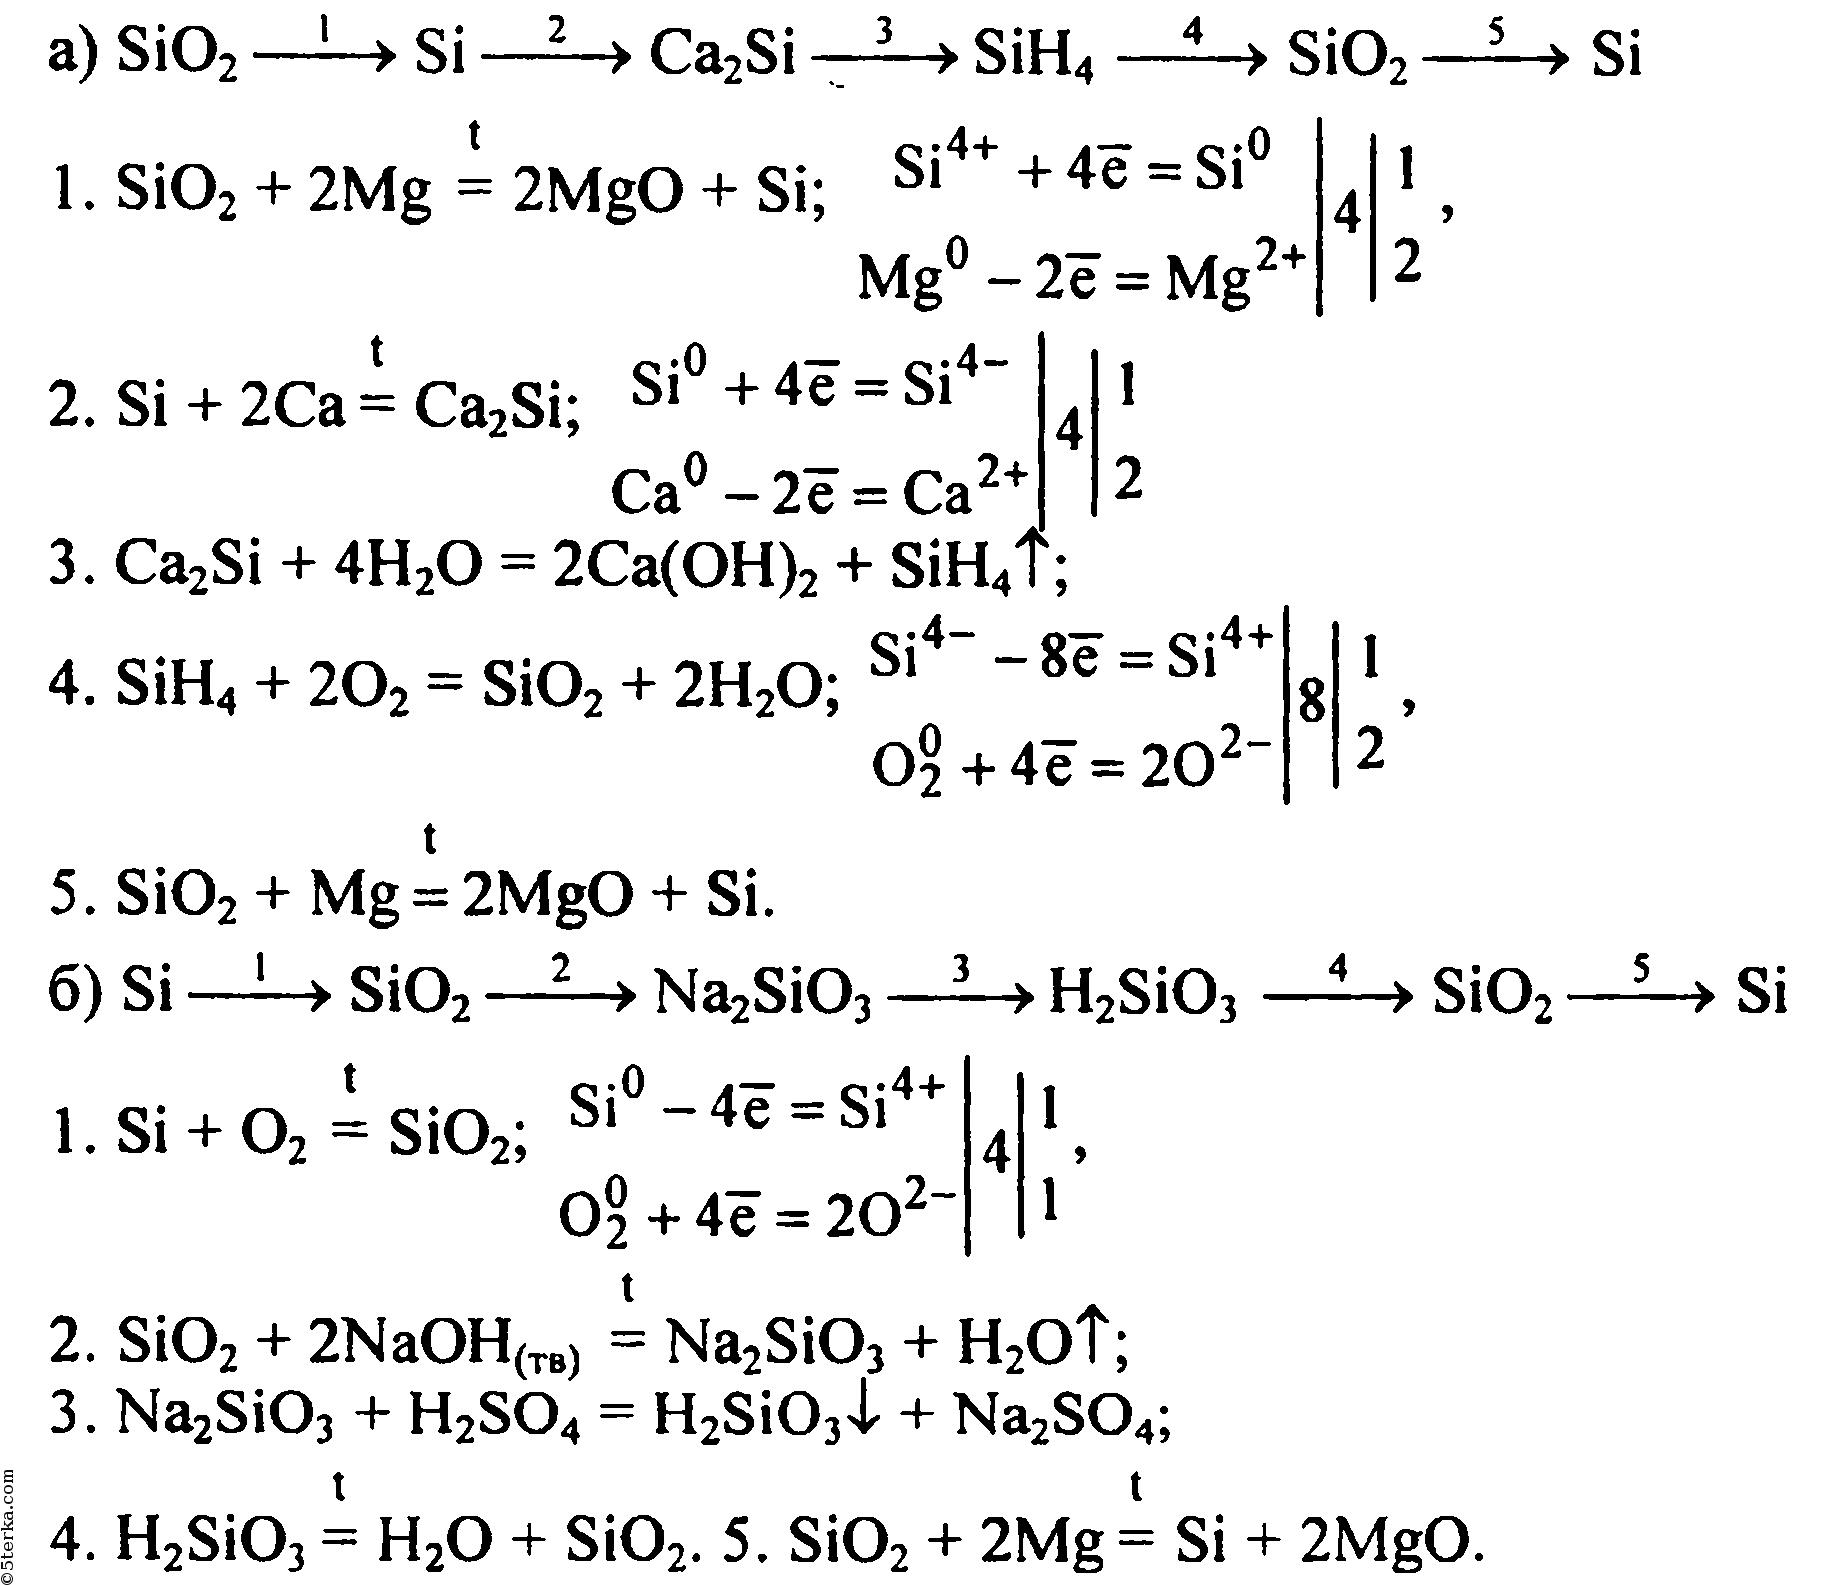 Напишите уравнения реакций с помощью которых можно осуществить следующие превращения по схеме